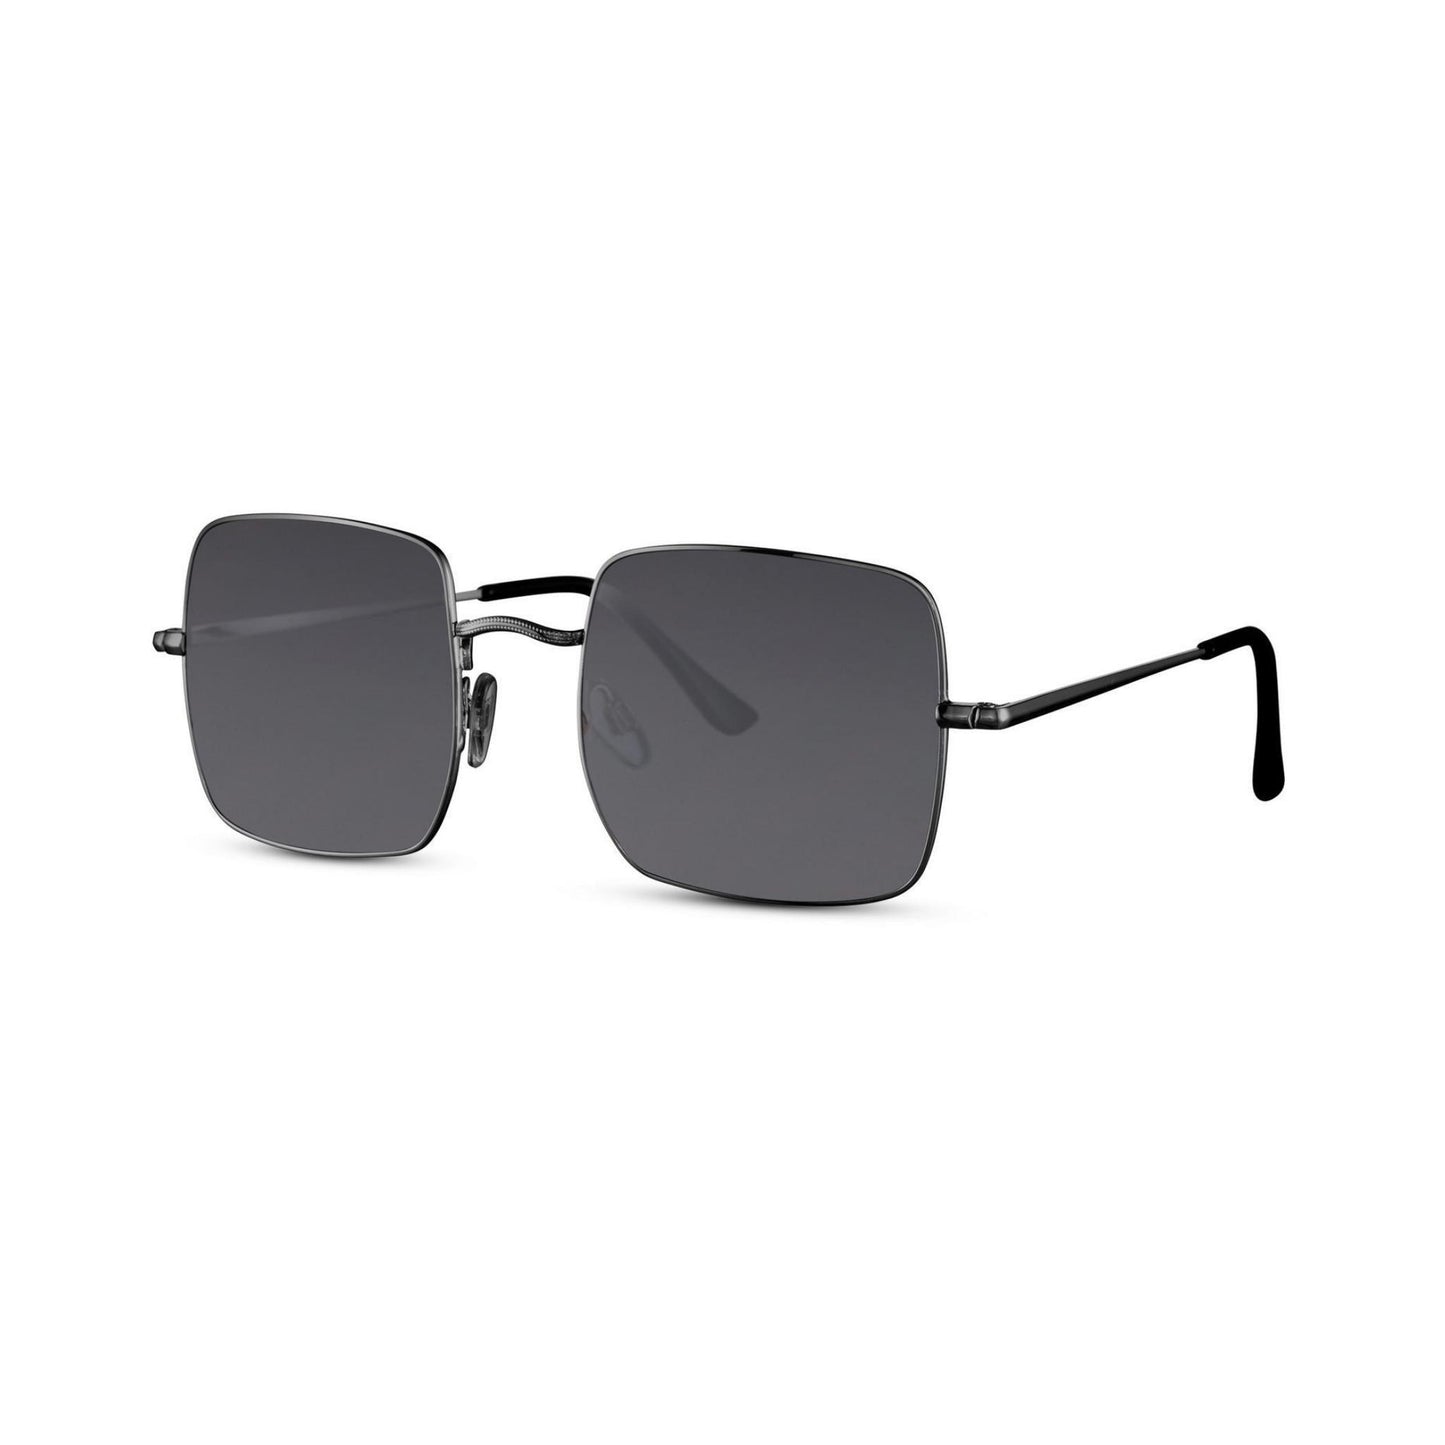 Τετράγωνα Γυαλιά ηλίου Muse της Exposure Sunglasses με προστασία UV400 με μαύρο σκελετό και μαύρο φακό. Πλάγια προβολή